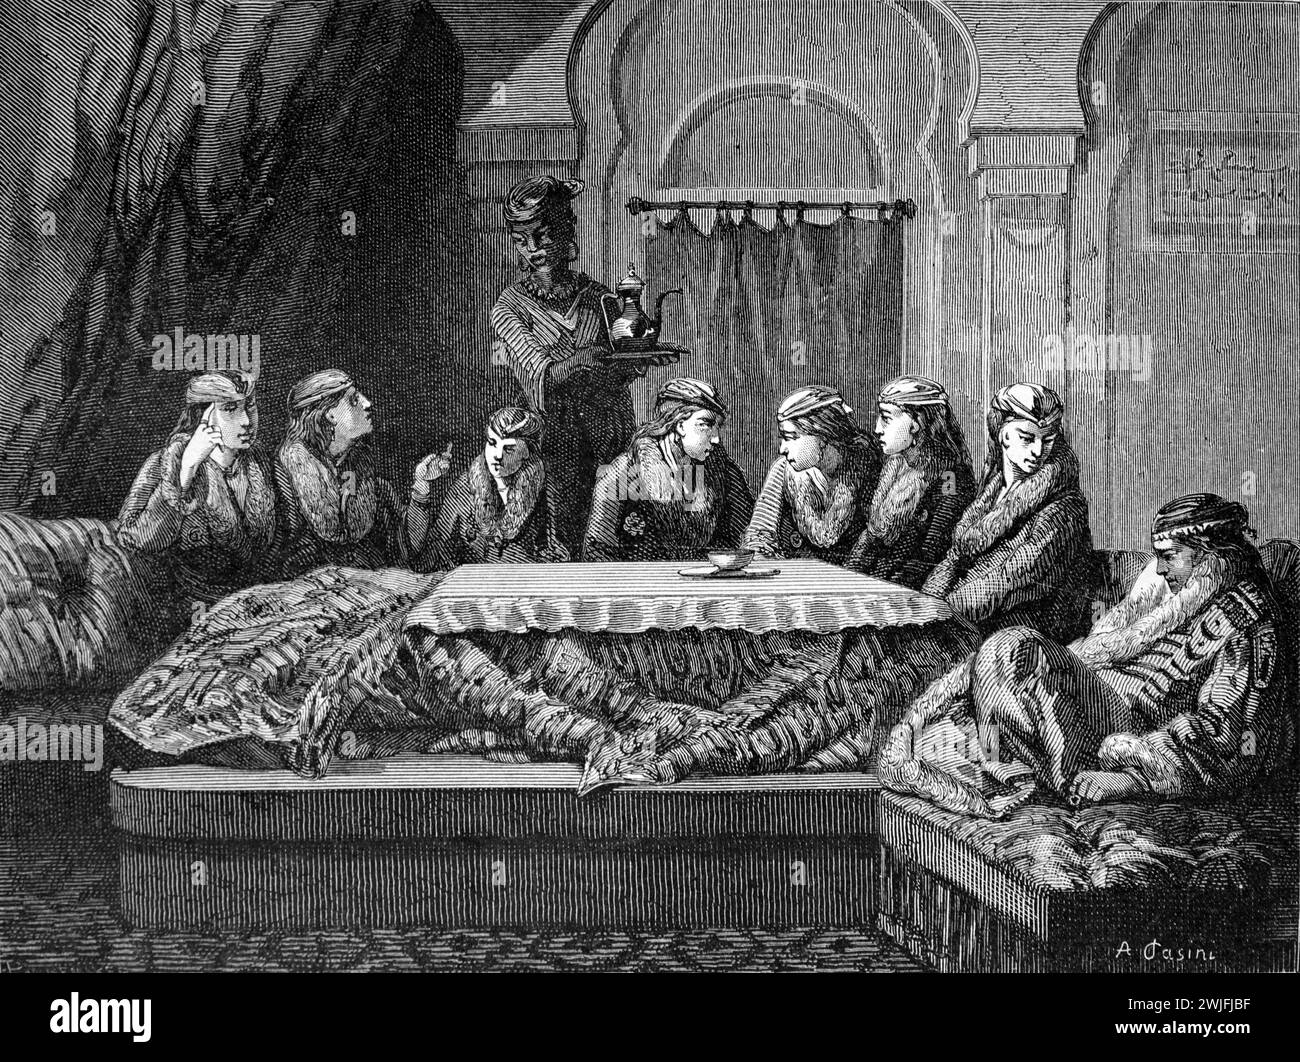 Türkische Frauen, die Tee oder Kaffee in einem türkischen Harem serviert werden, drängten sich um einen Holzofen, bekannt als Tandour Istanbul Turkey. Vintagz oder historische Gravur oder Illustration 1863 Stockfoto